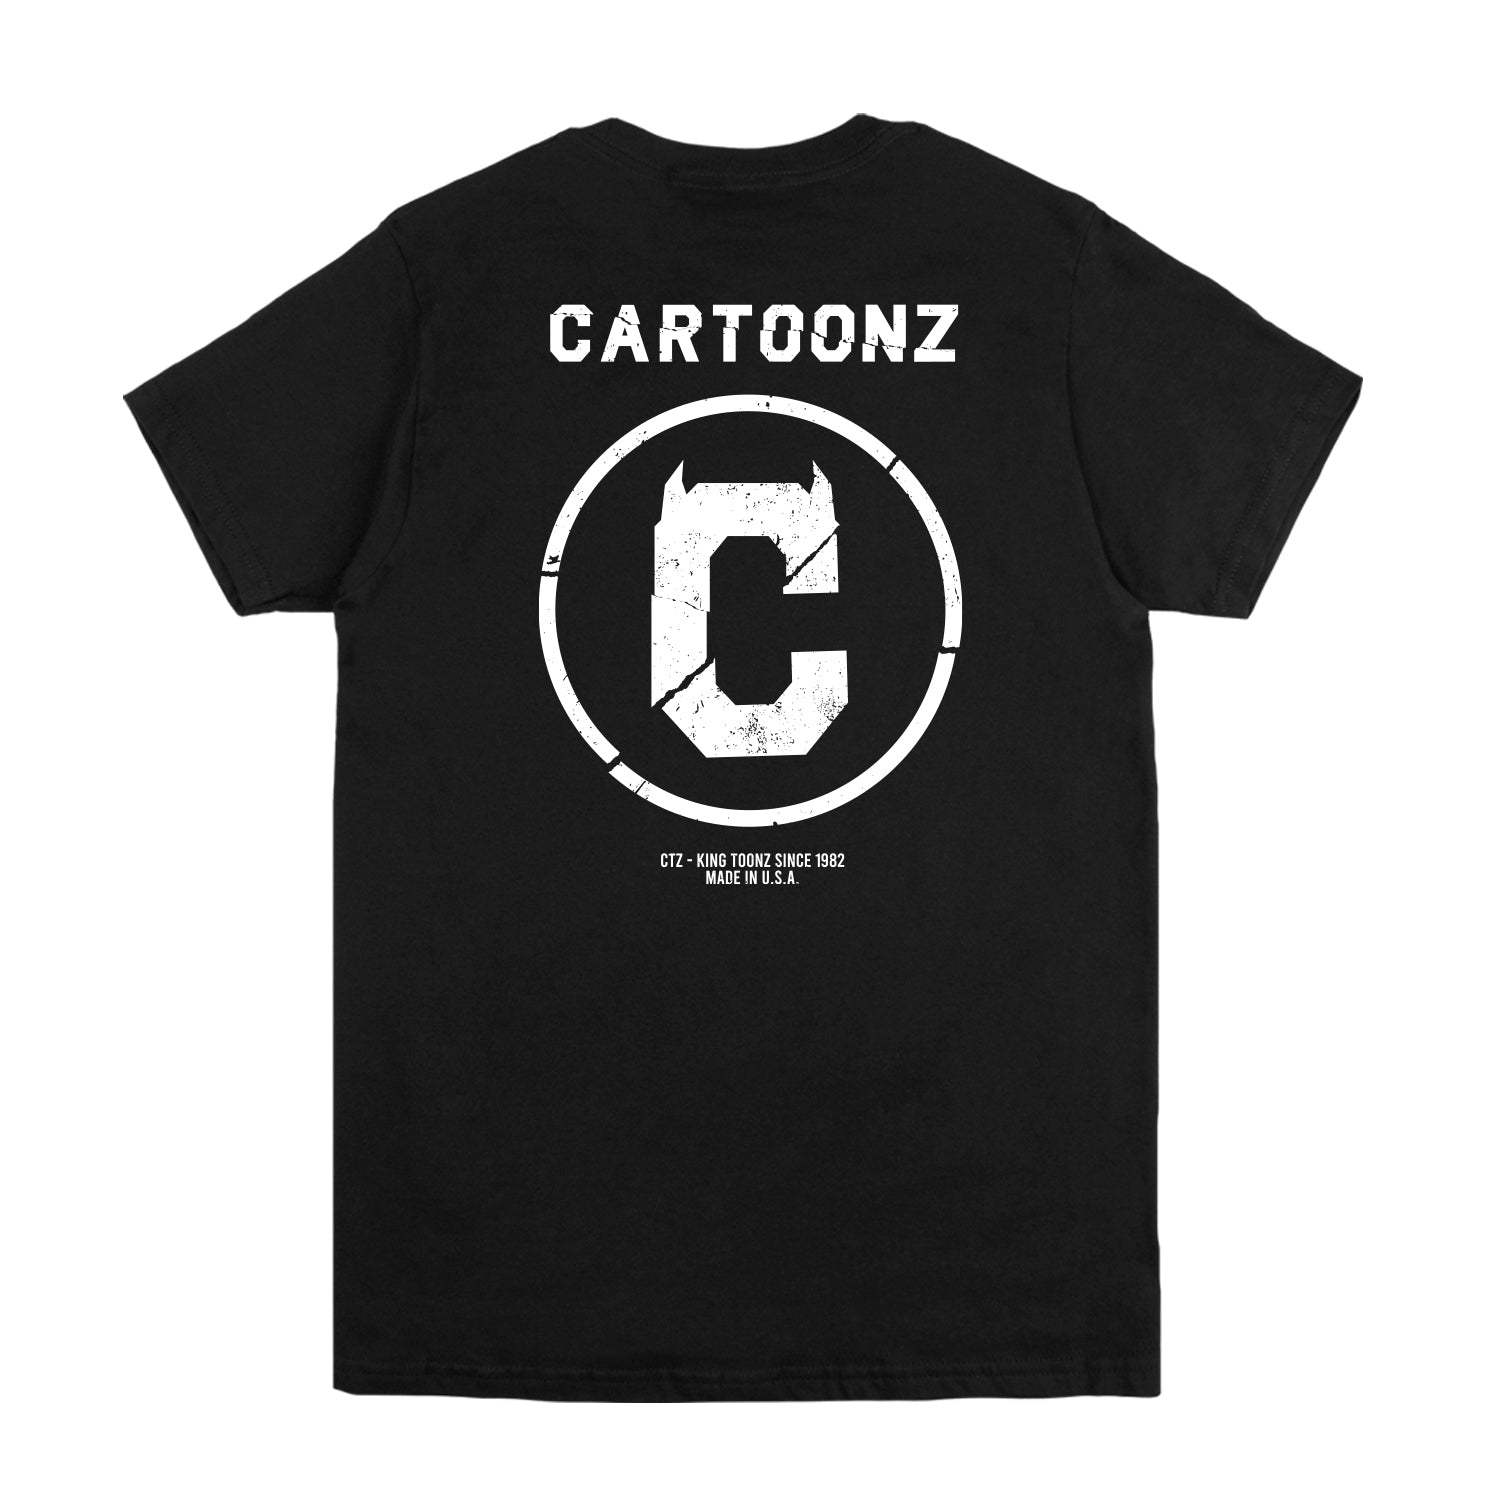 CaRtOoNz | Fracture Tee (Black)